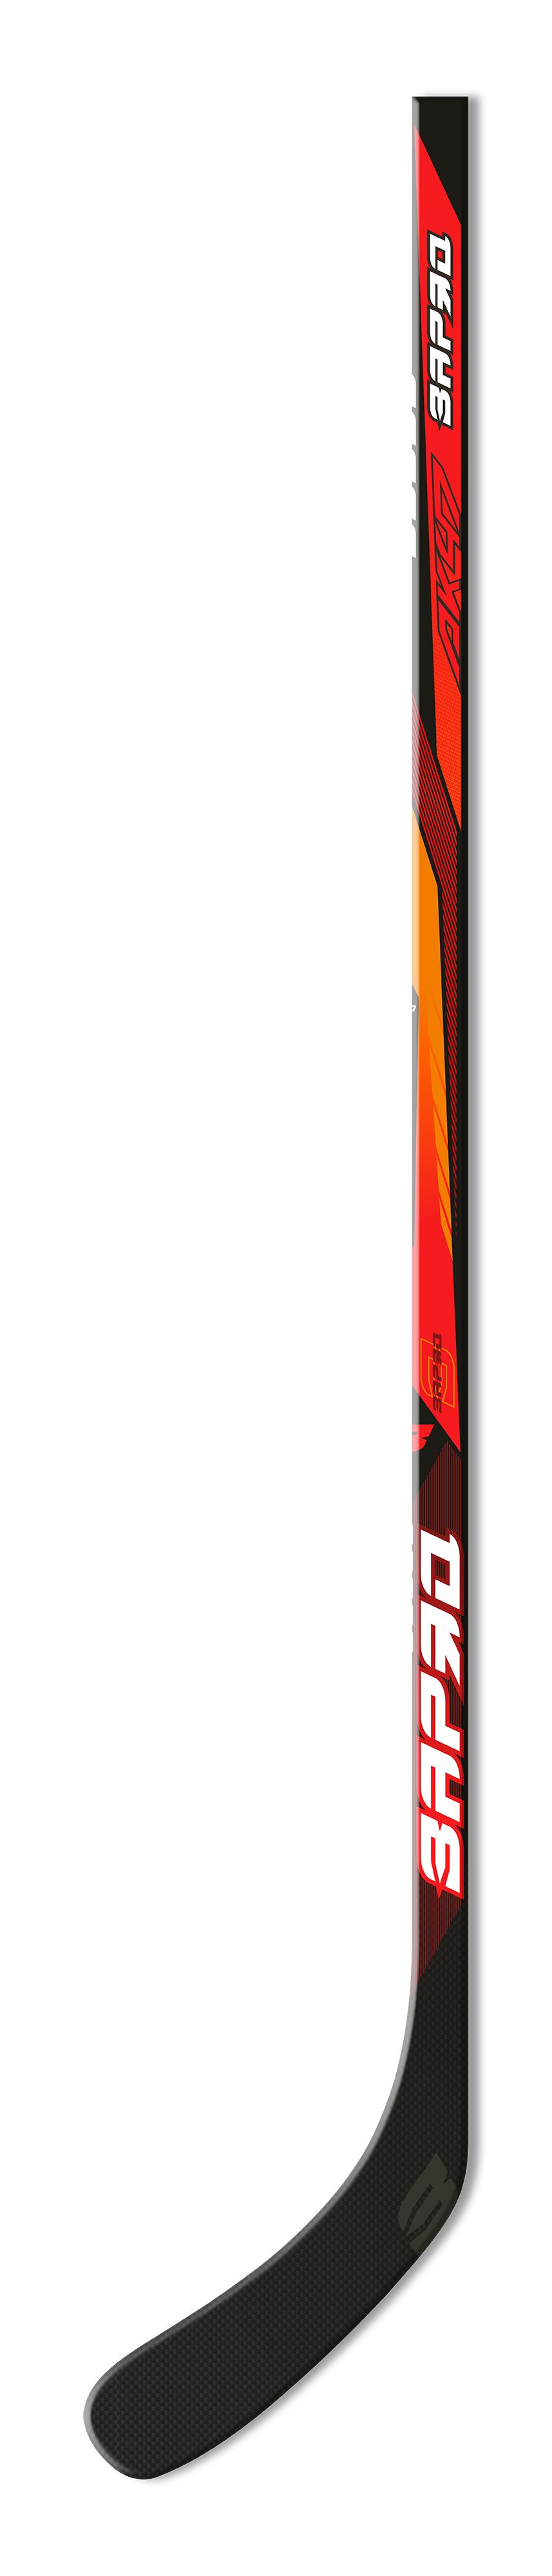 Клюшка ЗАРЯД Hockey stick, правый хват, AK47Team-R50-52